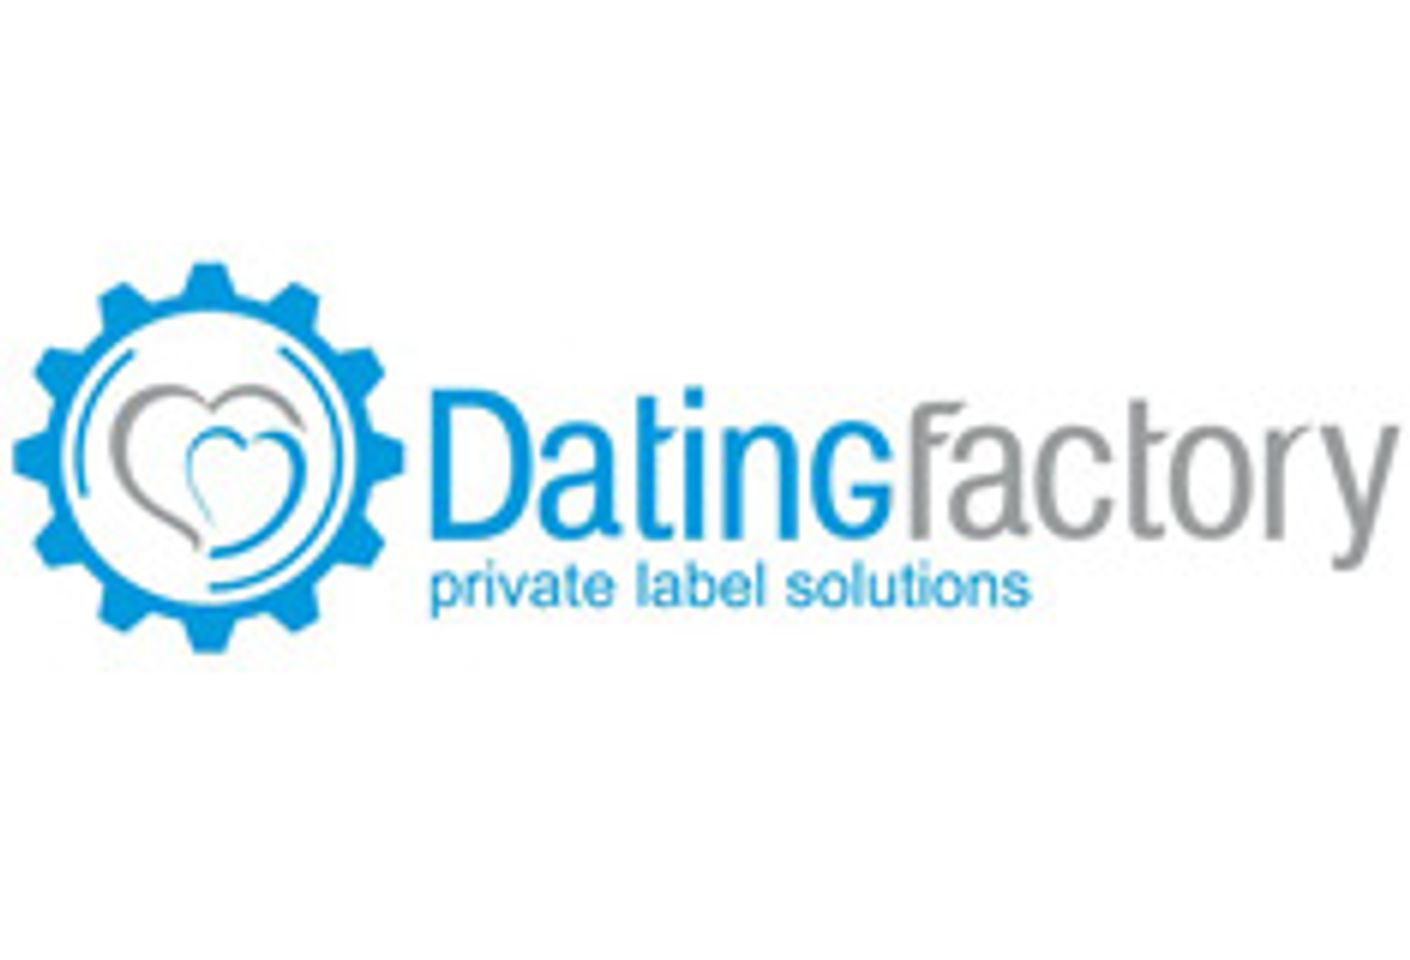 Dating Factory to Sponsor 2013 Phoenix Forum